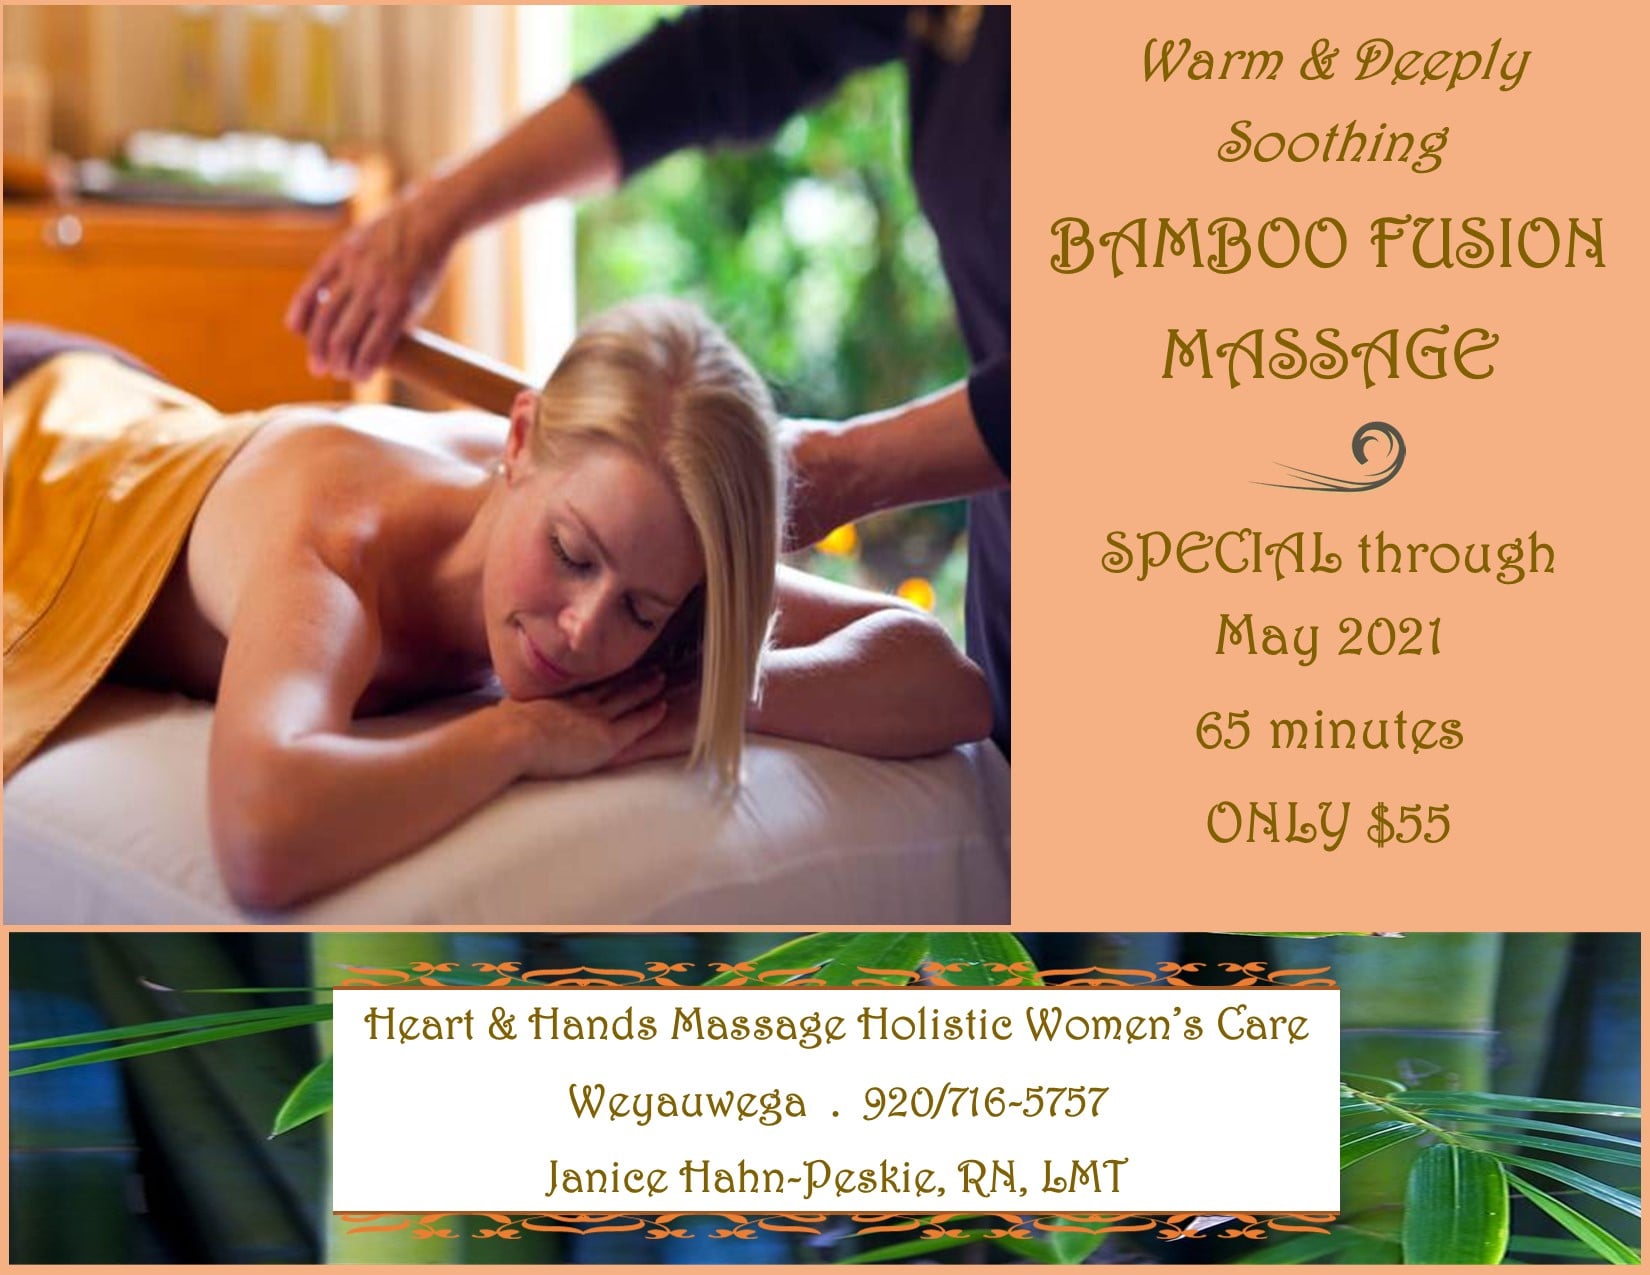 Heart & Hands Massage Holistic Women's Care